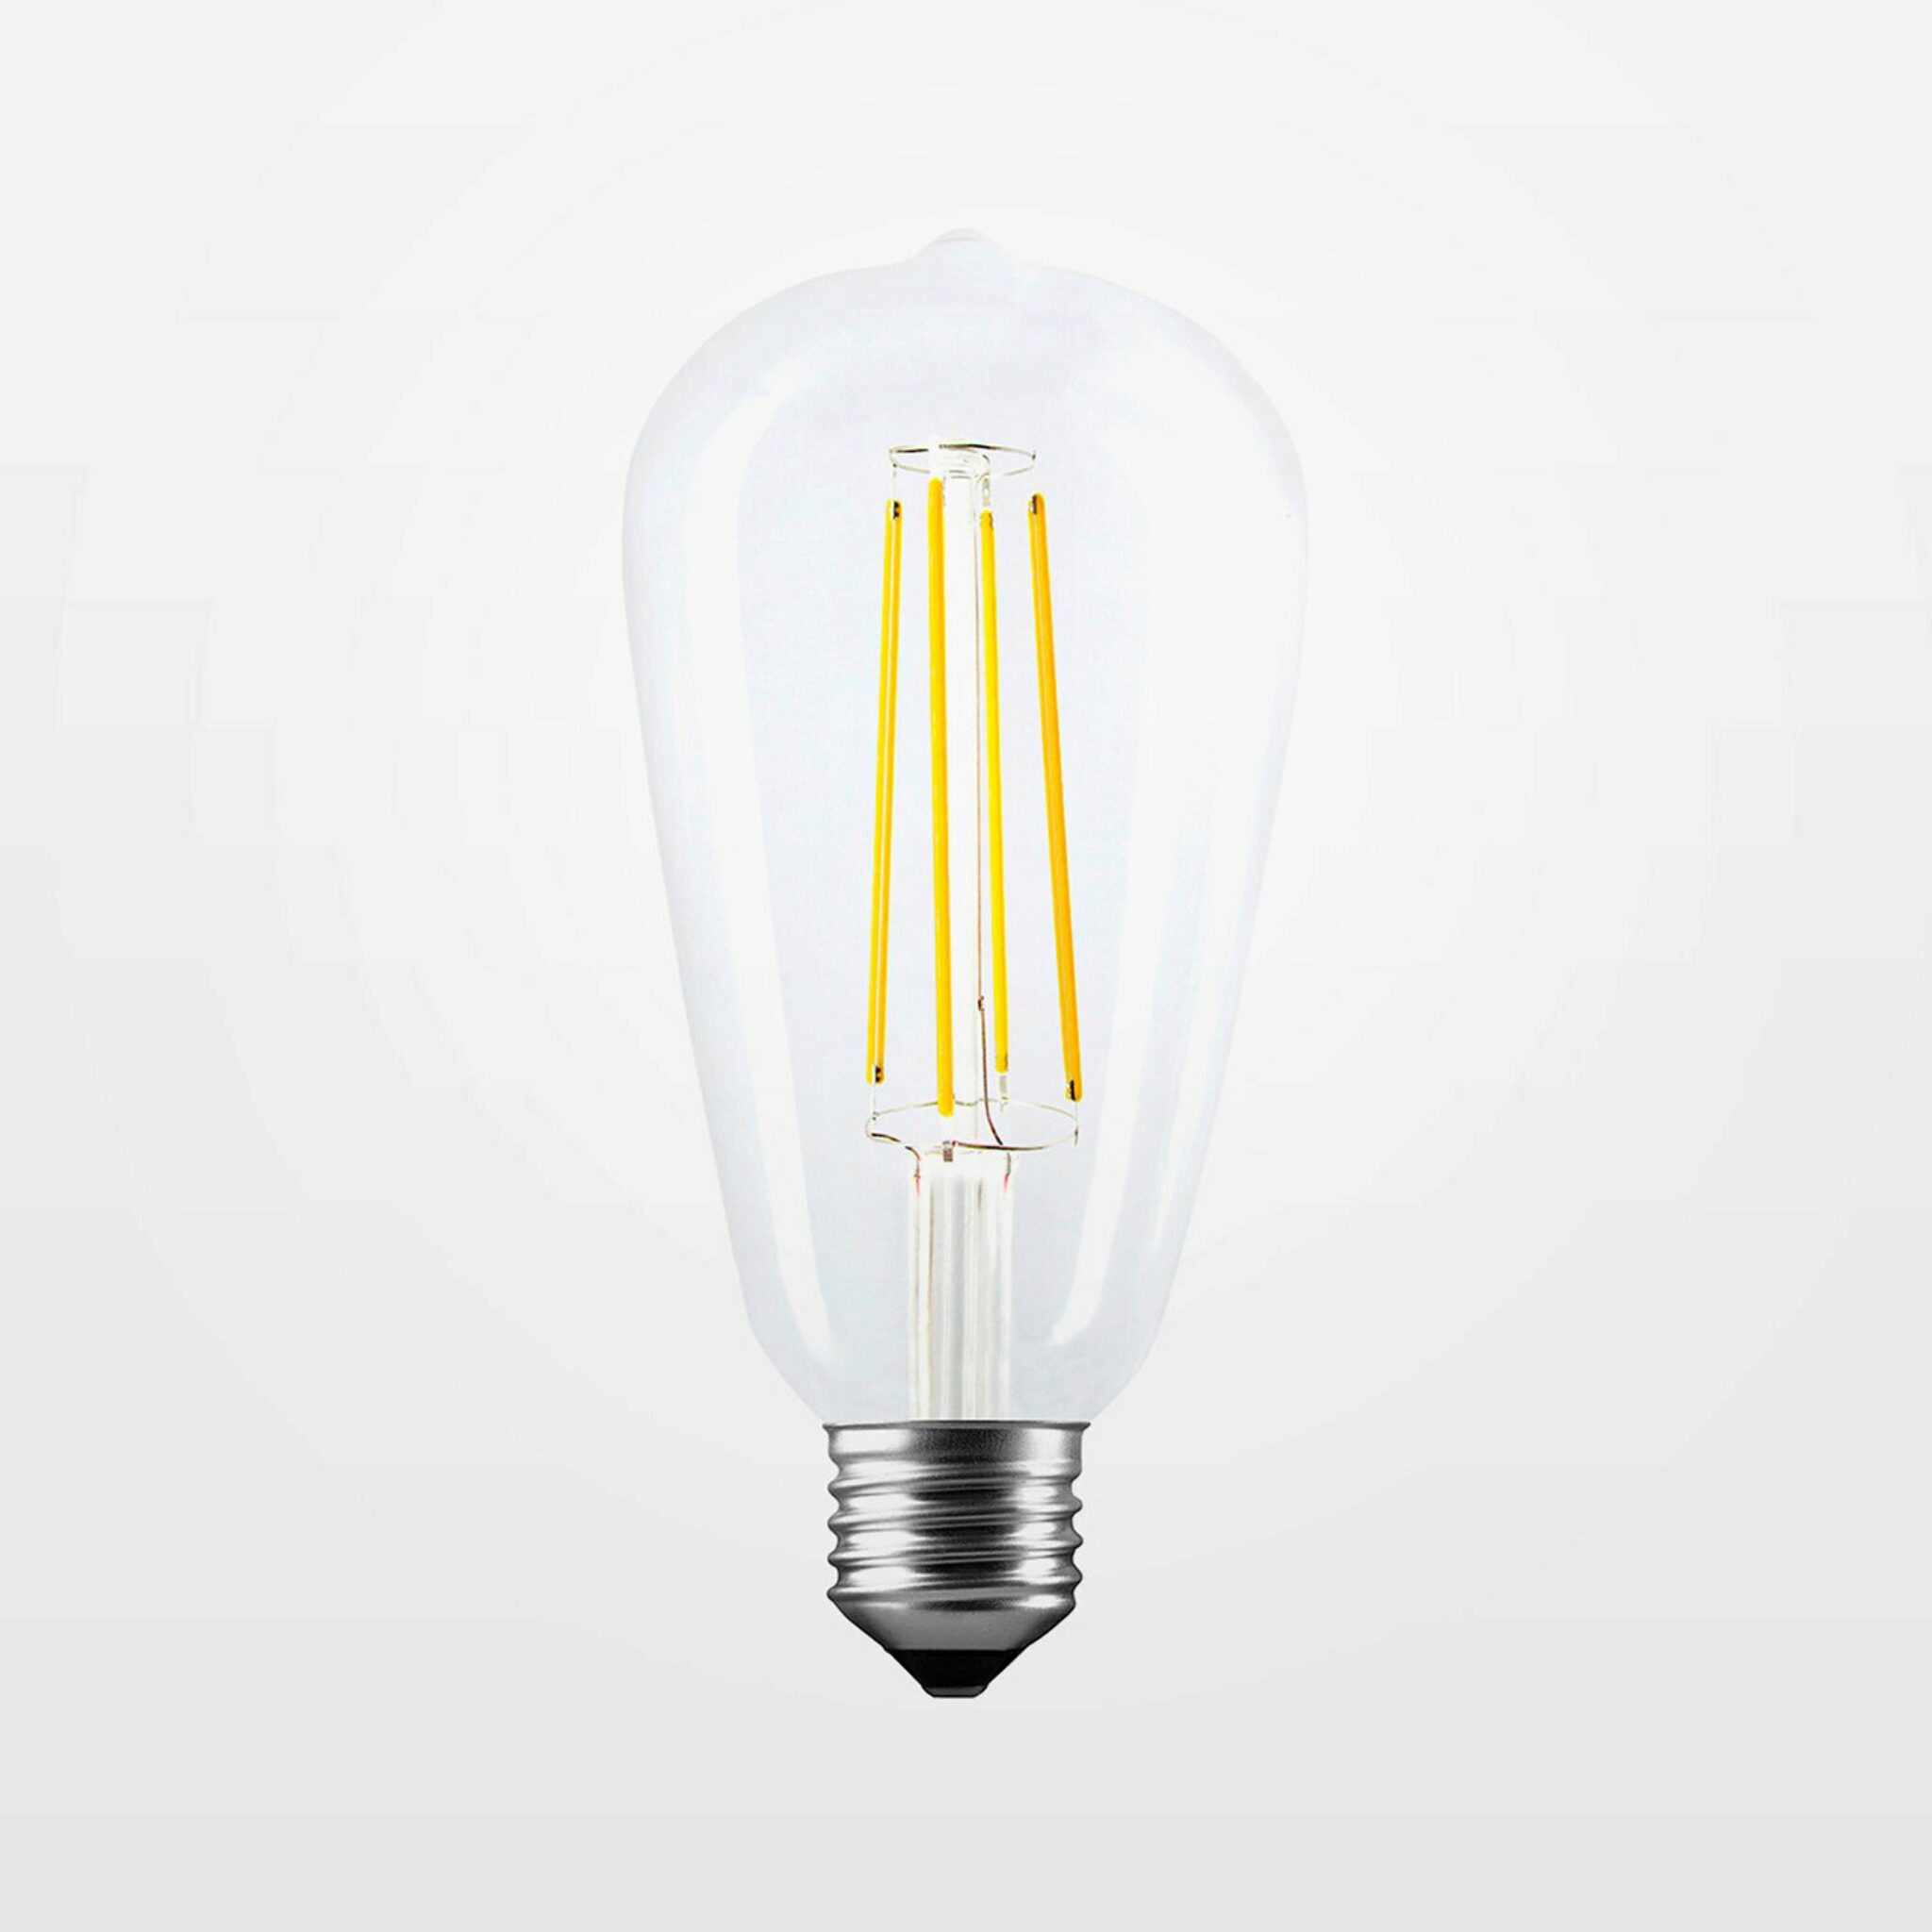 15 Migliori Lampadine A LED Per Apparecchi Da Esterno